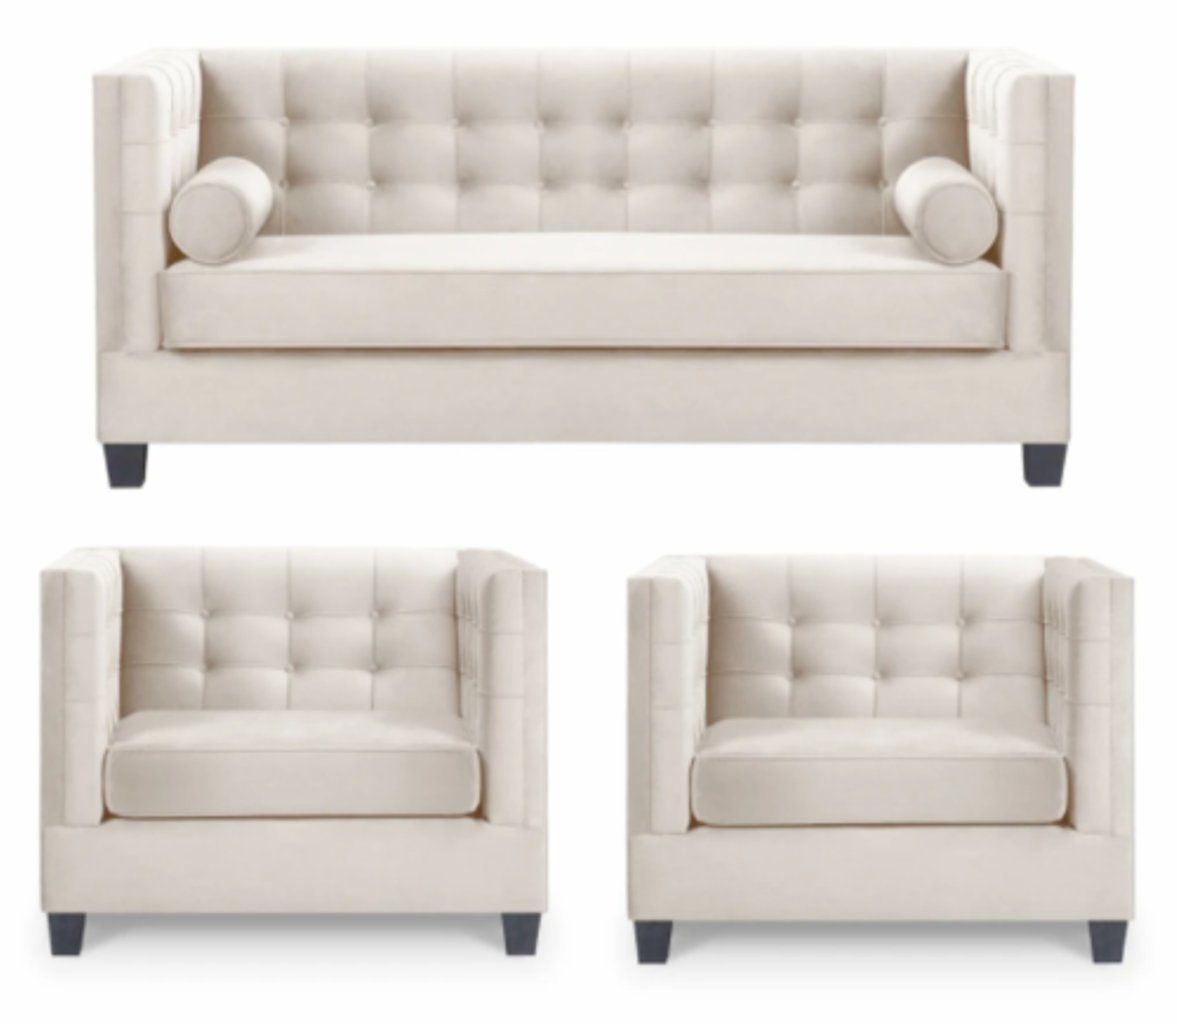 JVmoebel Sofa Stilvolle weiße Couchgarnitur Chesterfield Design 3+1+1 Neu, Made in Europe